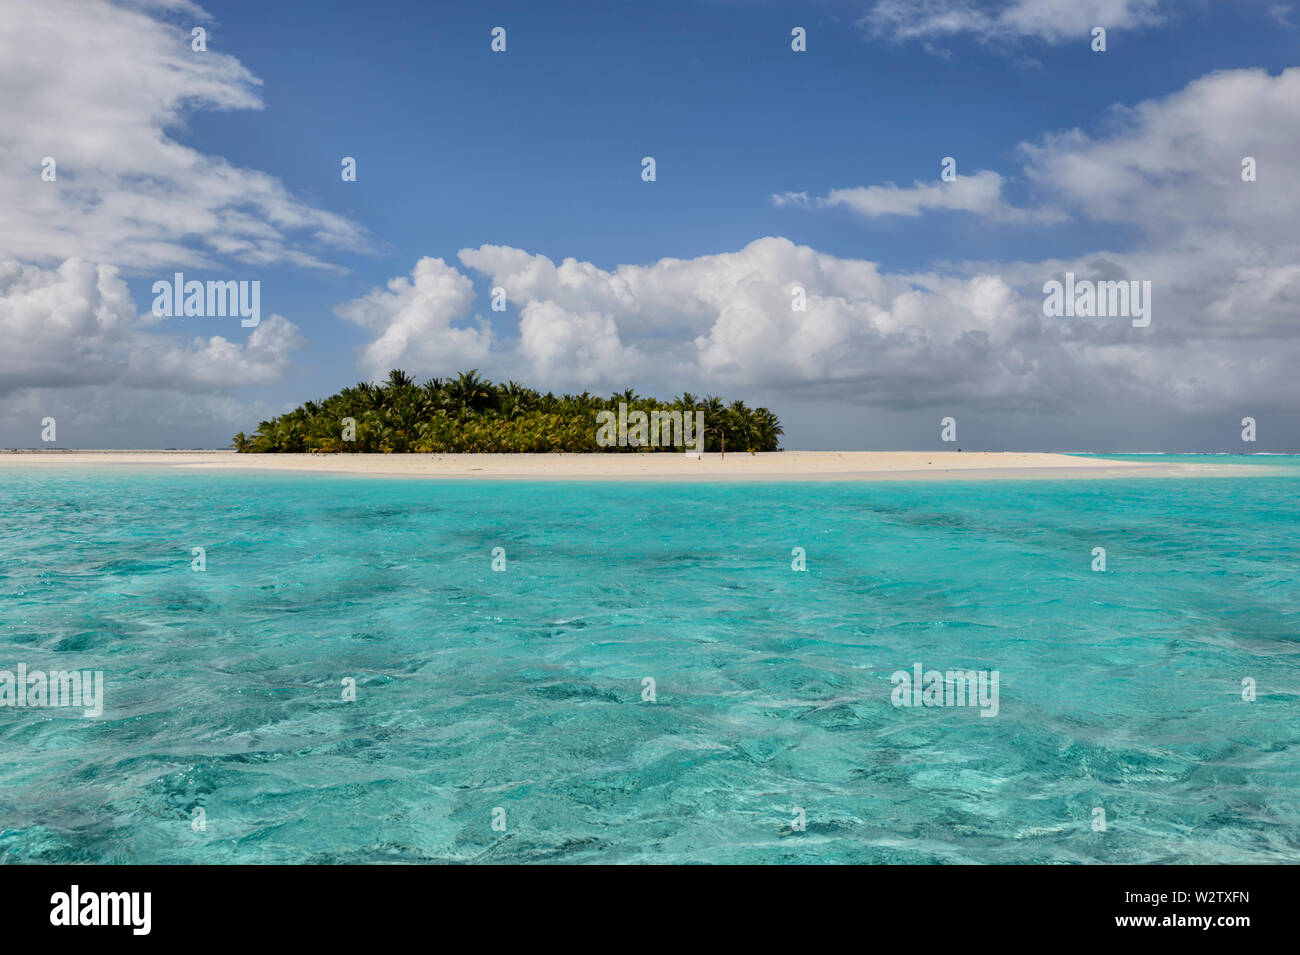 Insel mit Palmen und von einem weißen Sandstrand in der türkisblauen Lagune von Aitutaki, Cook Inseln, Polynesien umgeben Stockfoto